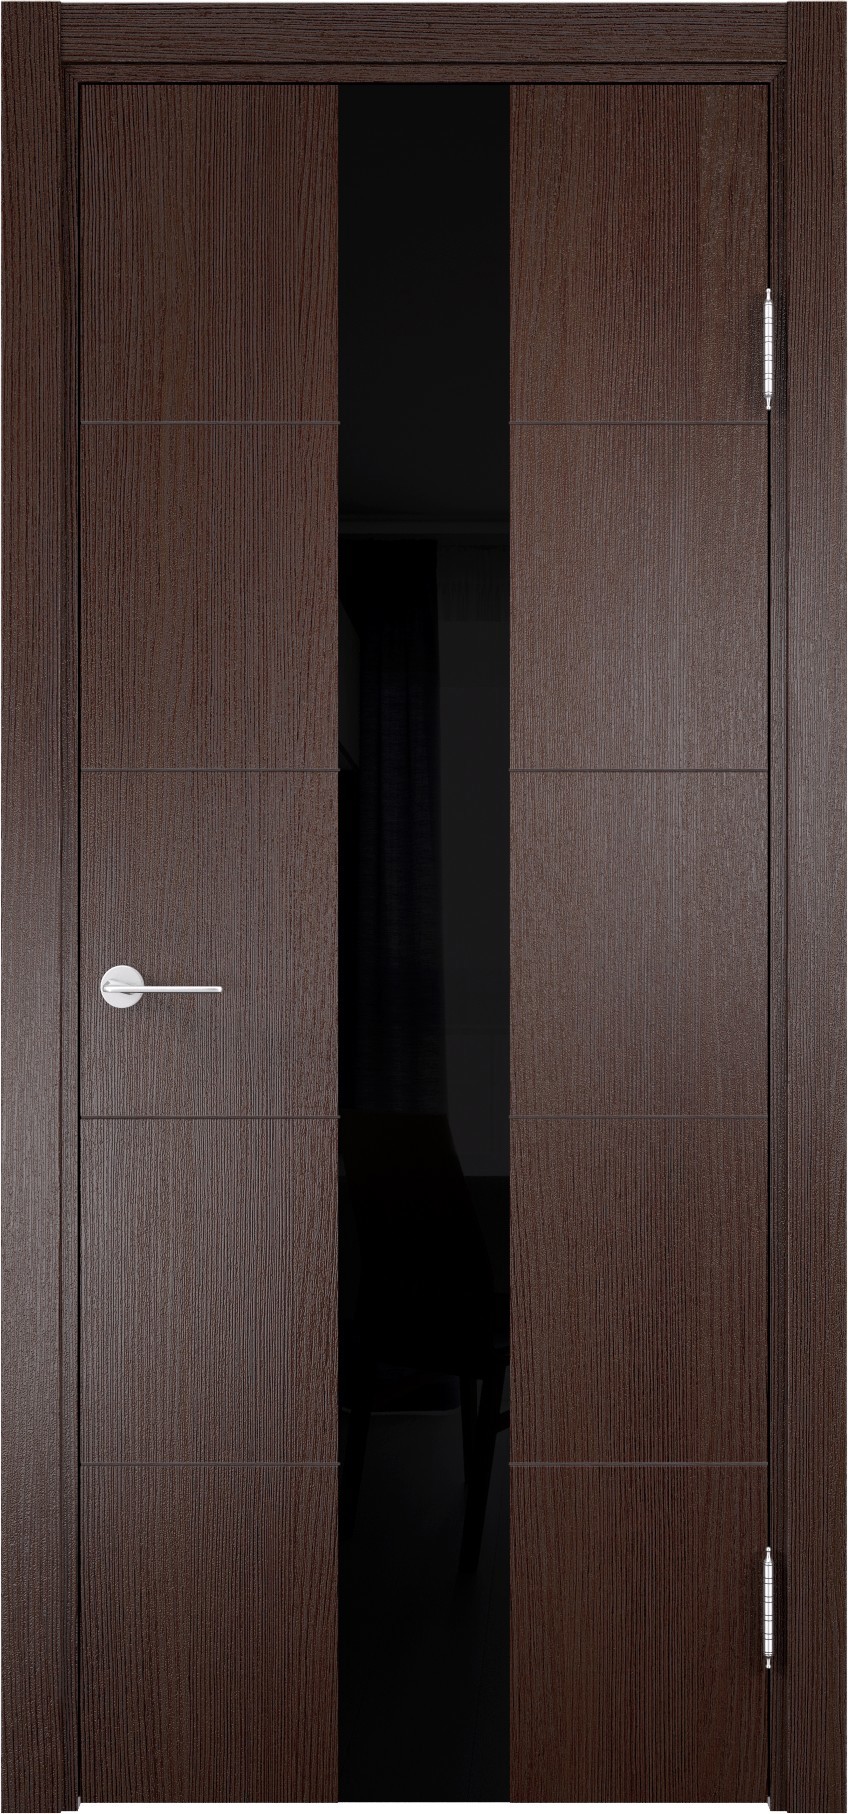 93718186 Дверь межкомнатная Турин (14) остекленная полипропилен цвет дуб графит вералинга 200 x 80 см STLM-0554460 CASAPORTE